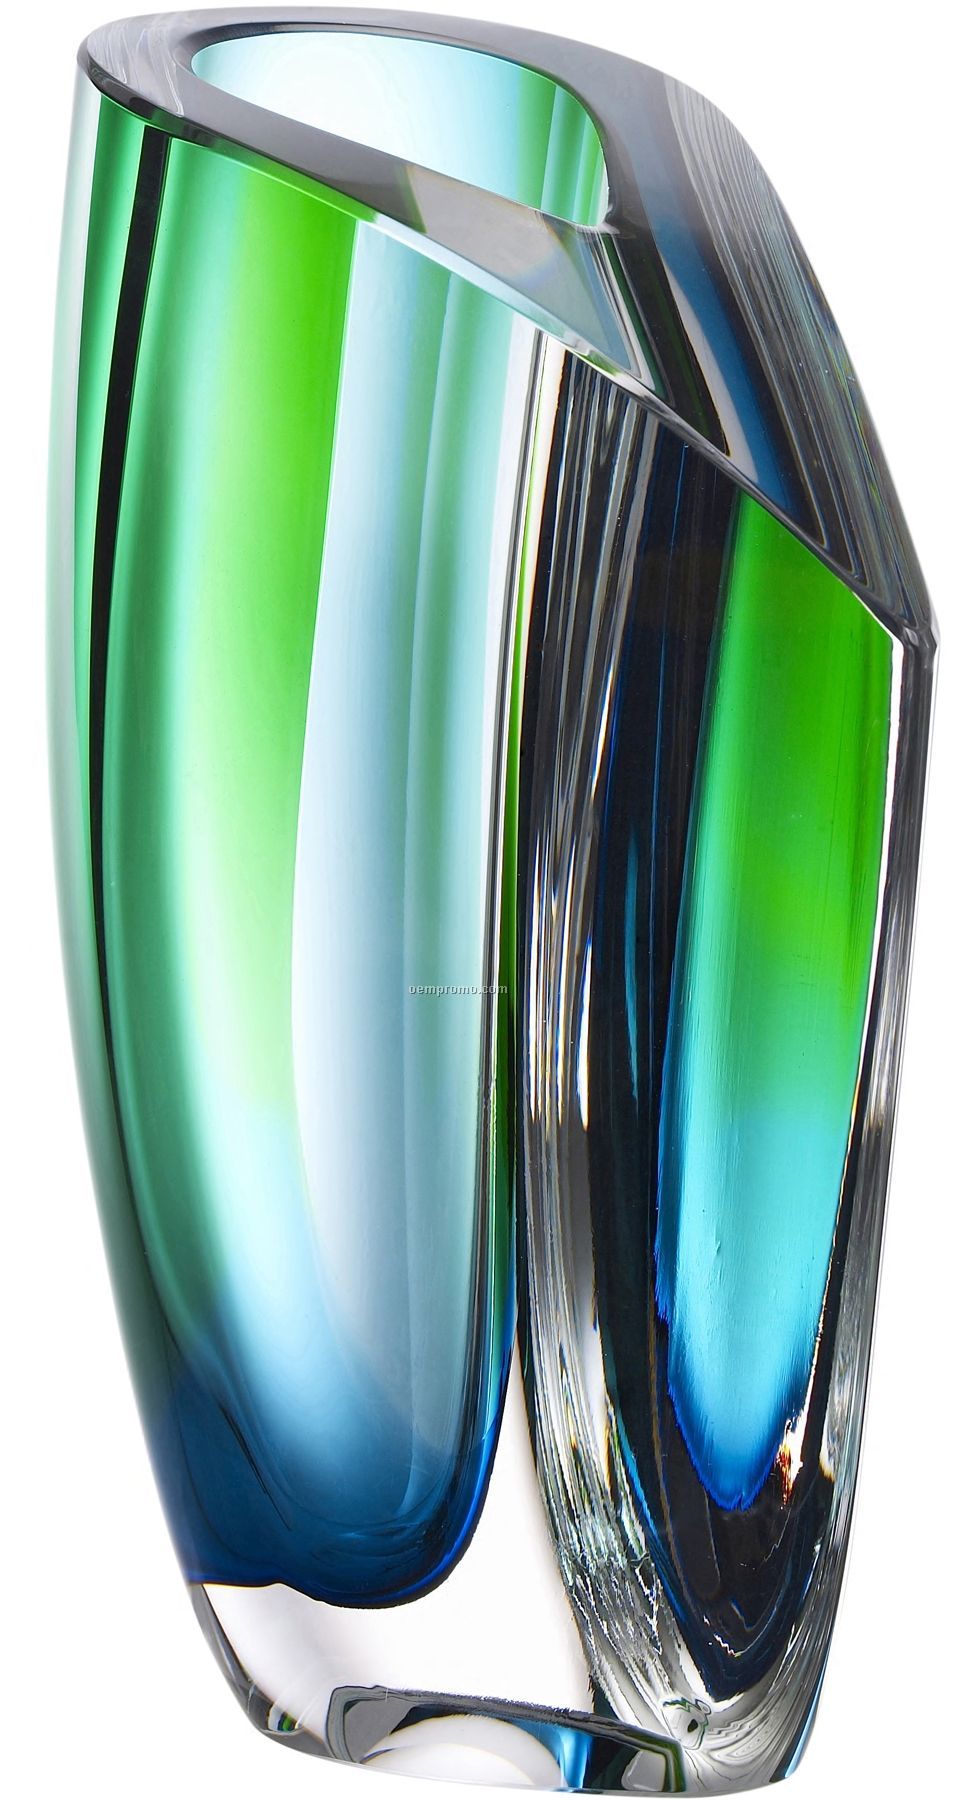 Mirage Glass Vase By Goran Warff (Green & Blue)